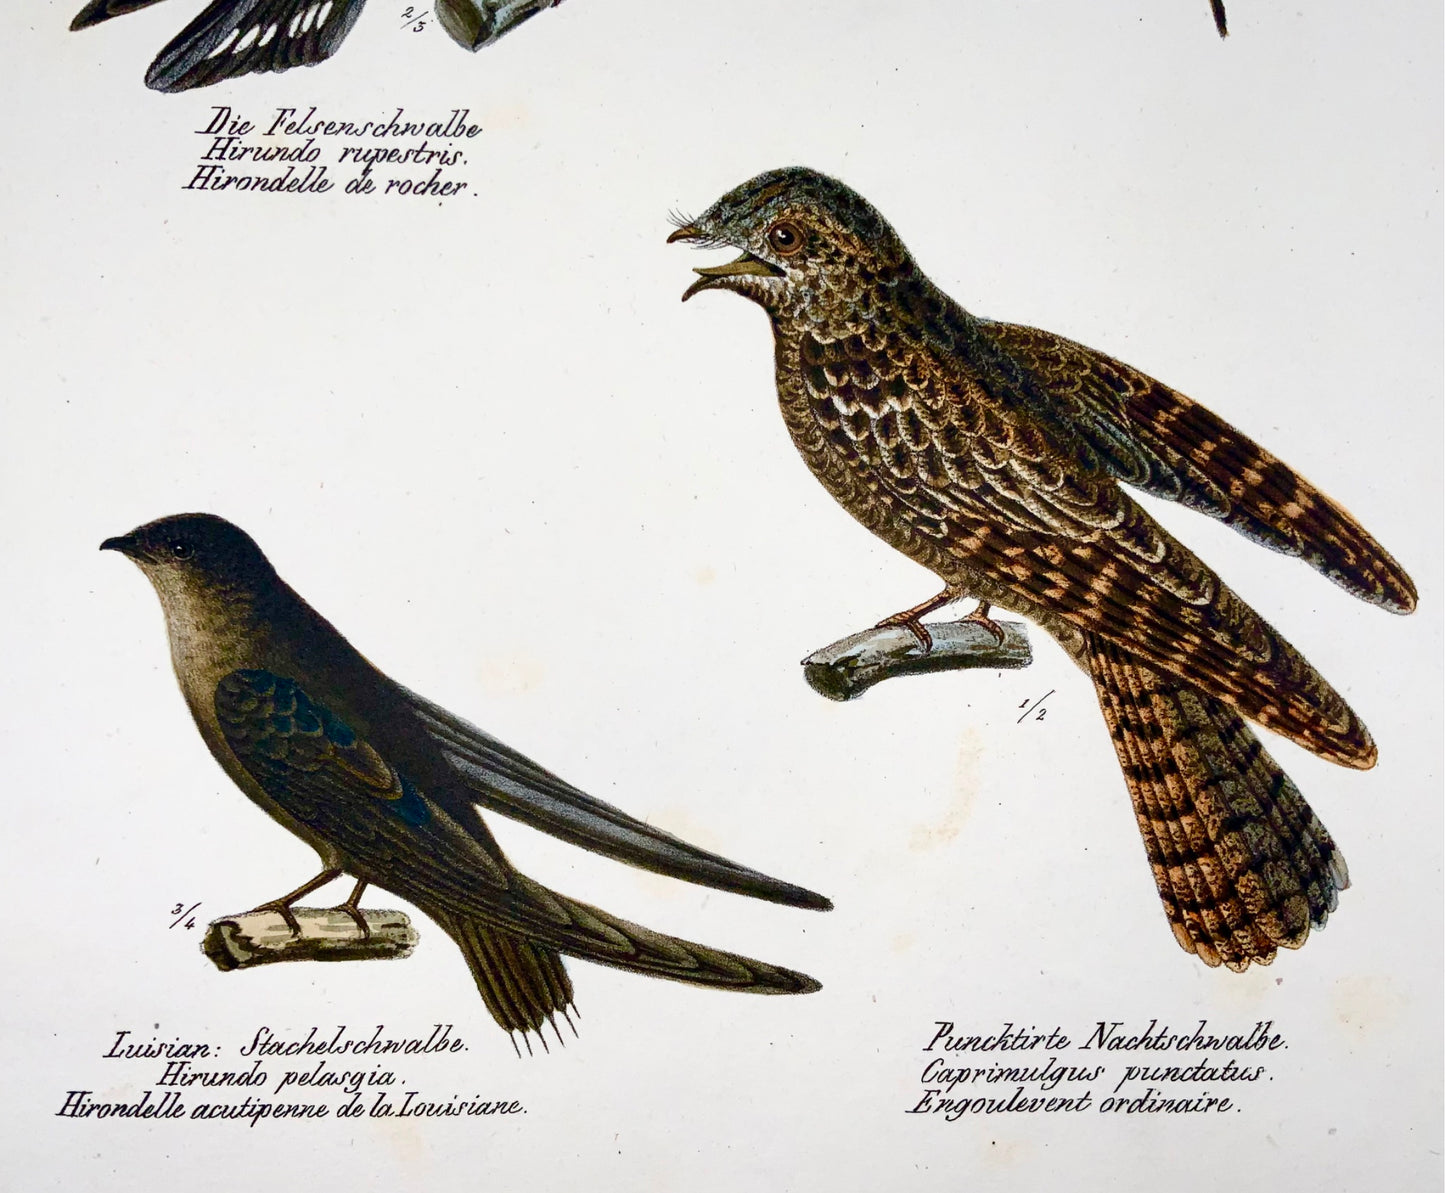 1830 HIRONDELLES, Oiseaux - Ornithologie Brodtmann lithographie FOLIO colorée à la main